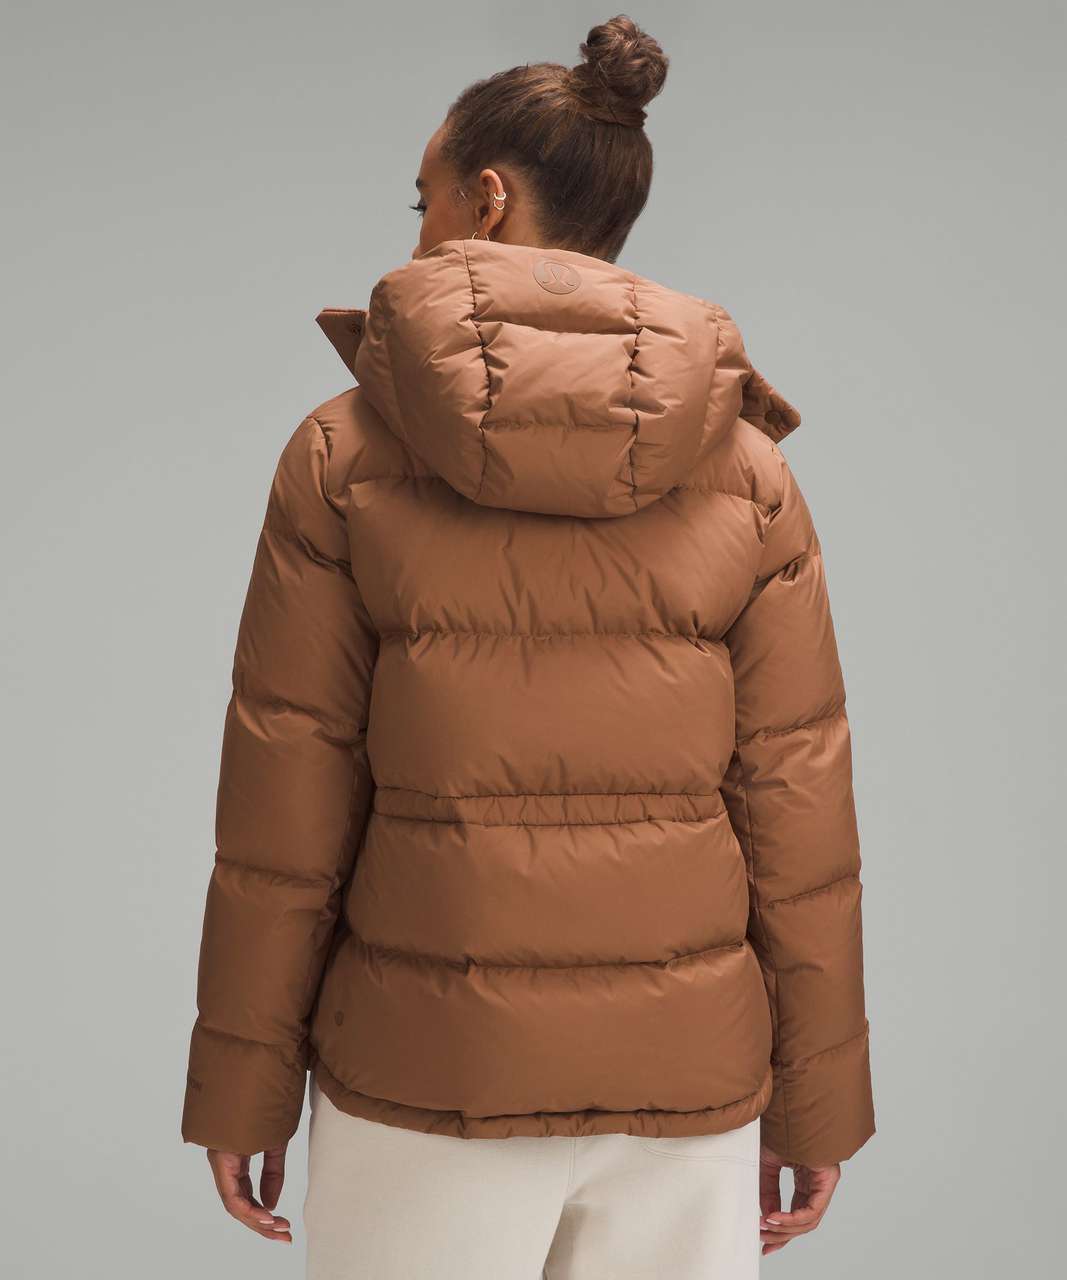 lululemon athletica Wunder Puff Long Jacket - Color Brown - Size